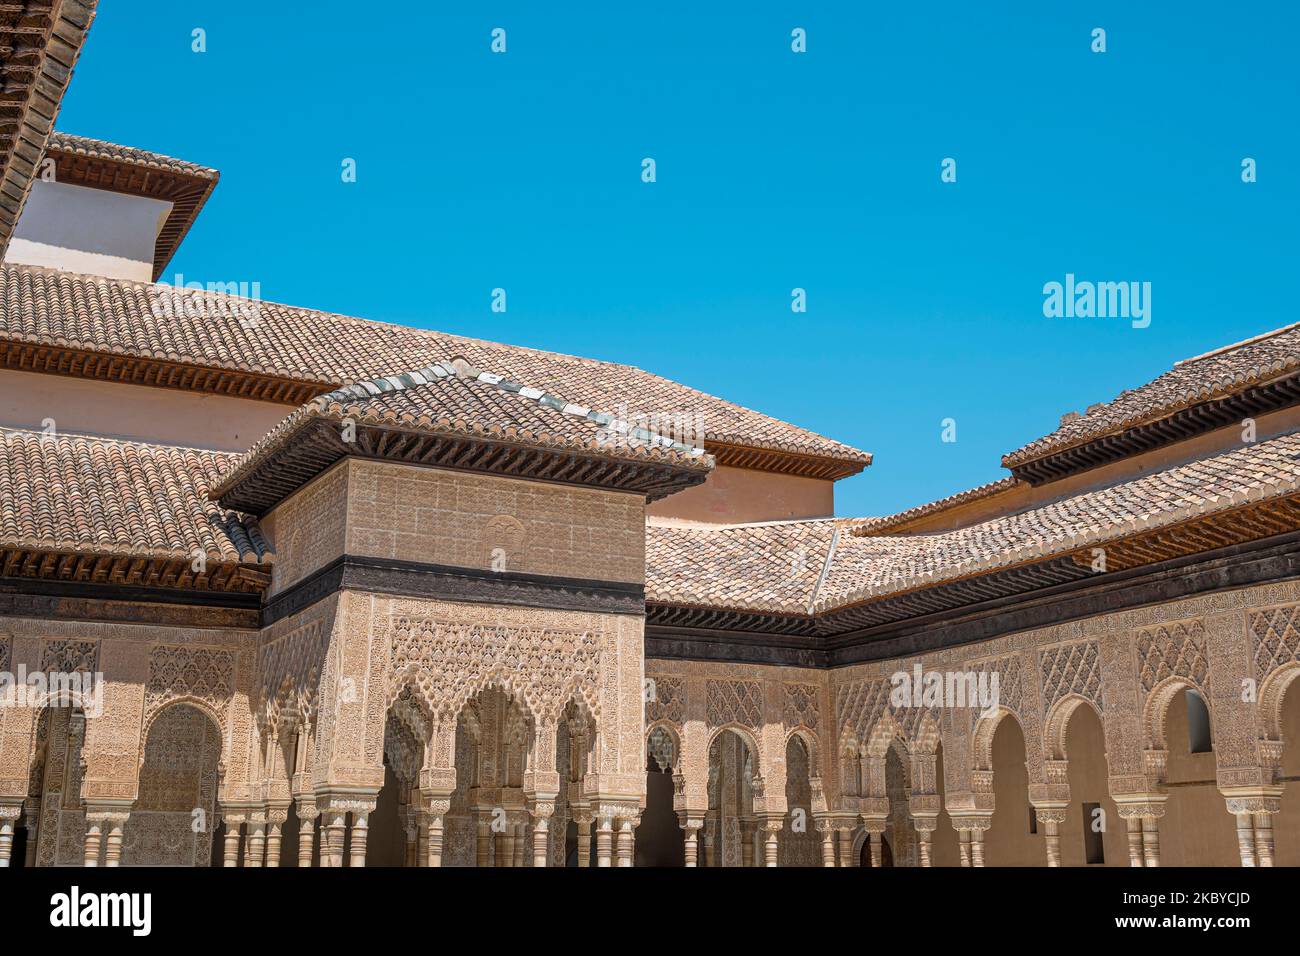 Hermosa arquitectura de estilo Ã¡rabe y arte nazarÃ del patio de los leones en la Alhambra de Granada, EspaÃ±a Stock Photo